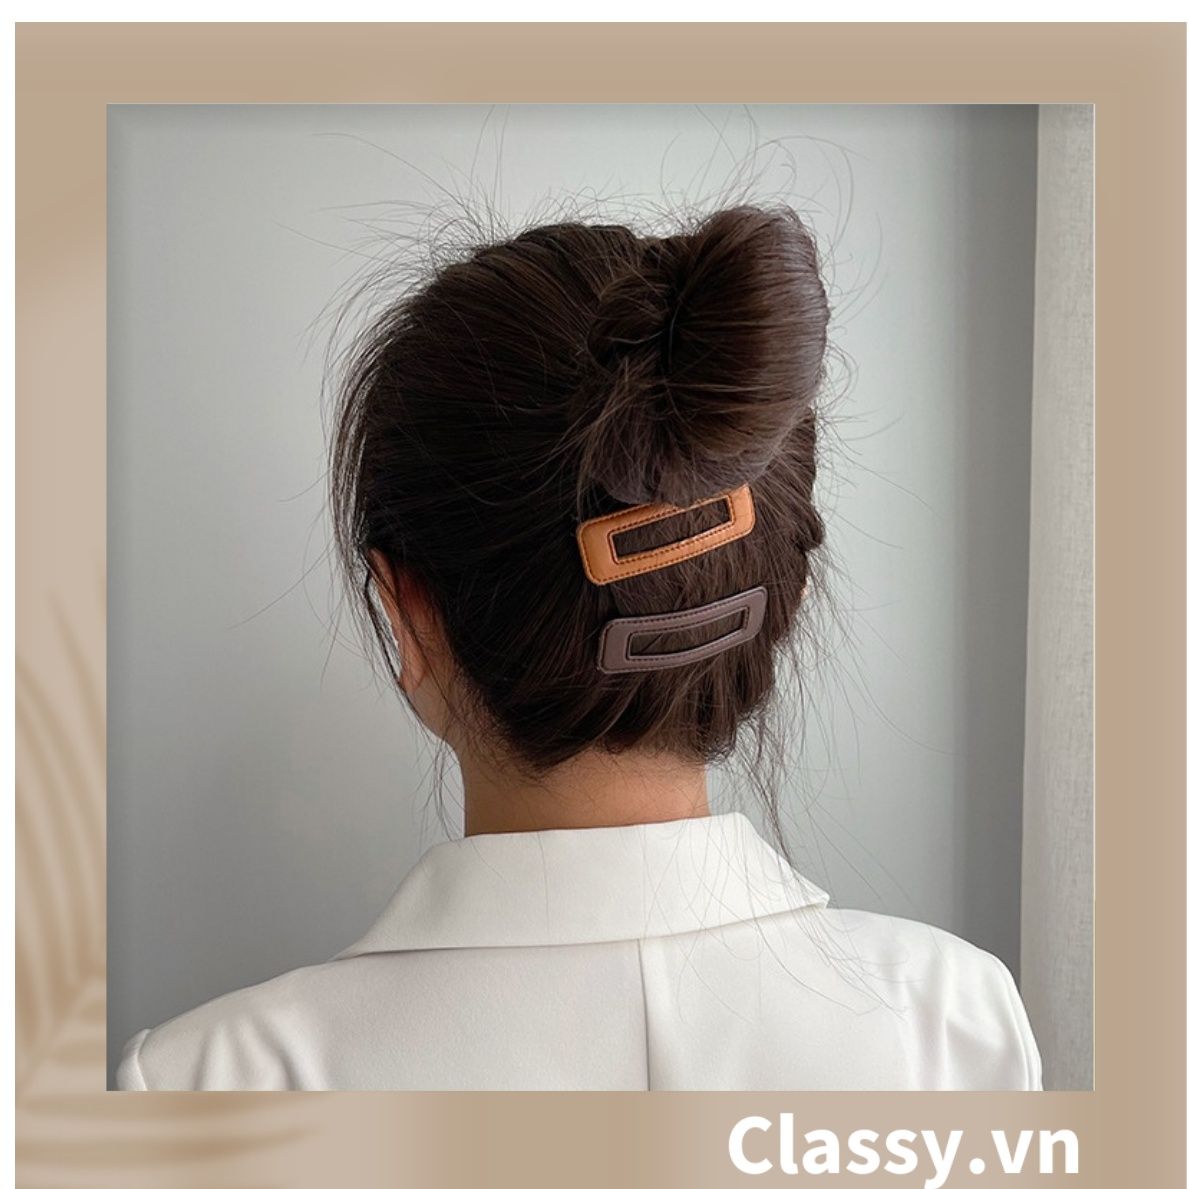  PK782 Kẹp tóc  dạng clip đen bọc da trơn màu phong cách tối giản theo phong cách Hàn Quốc 